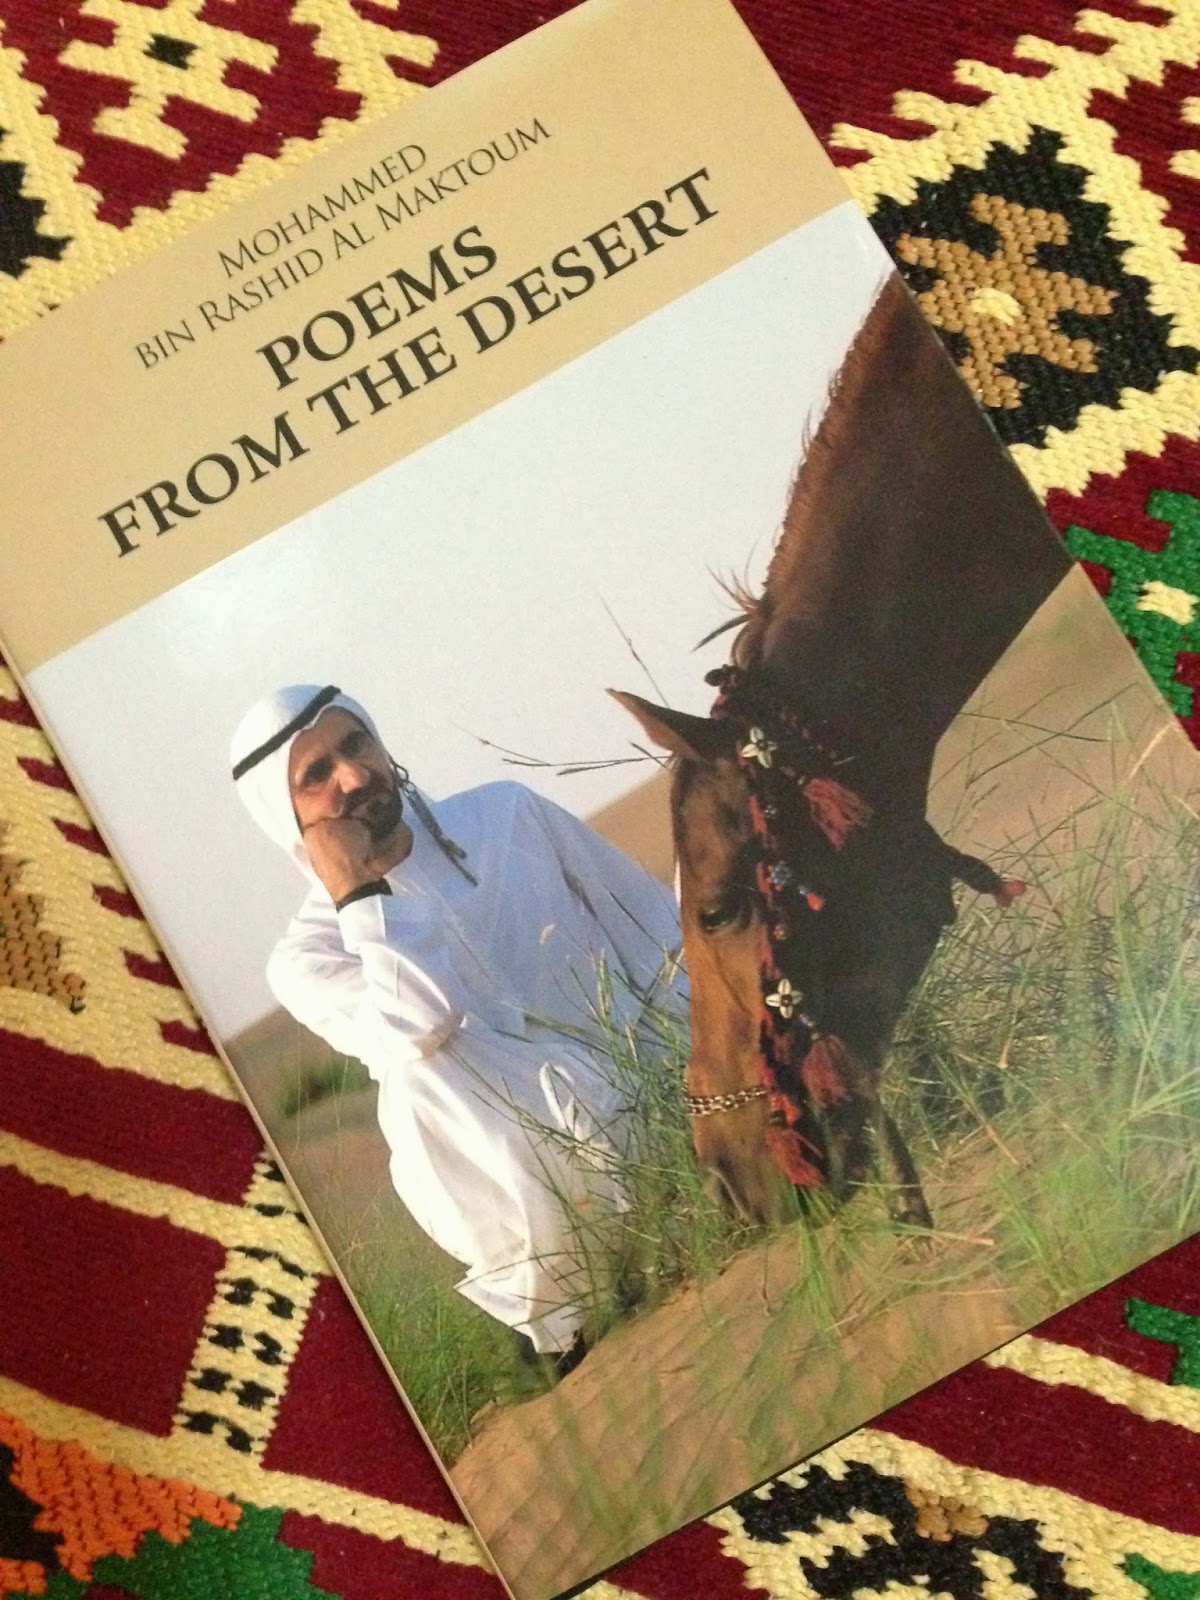 The Blue Chic: Poems from the Desert - Mohammed Bin Rashid Al Maktoum